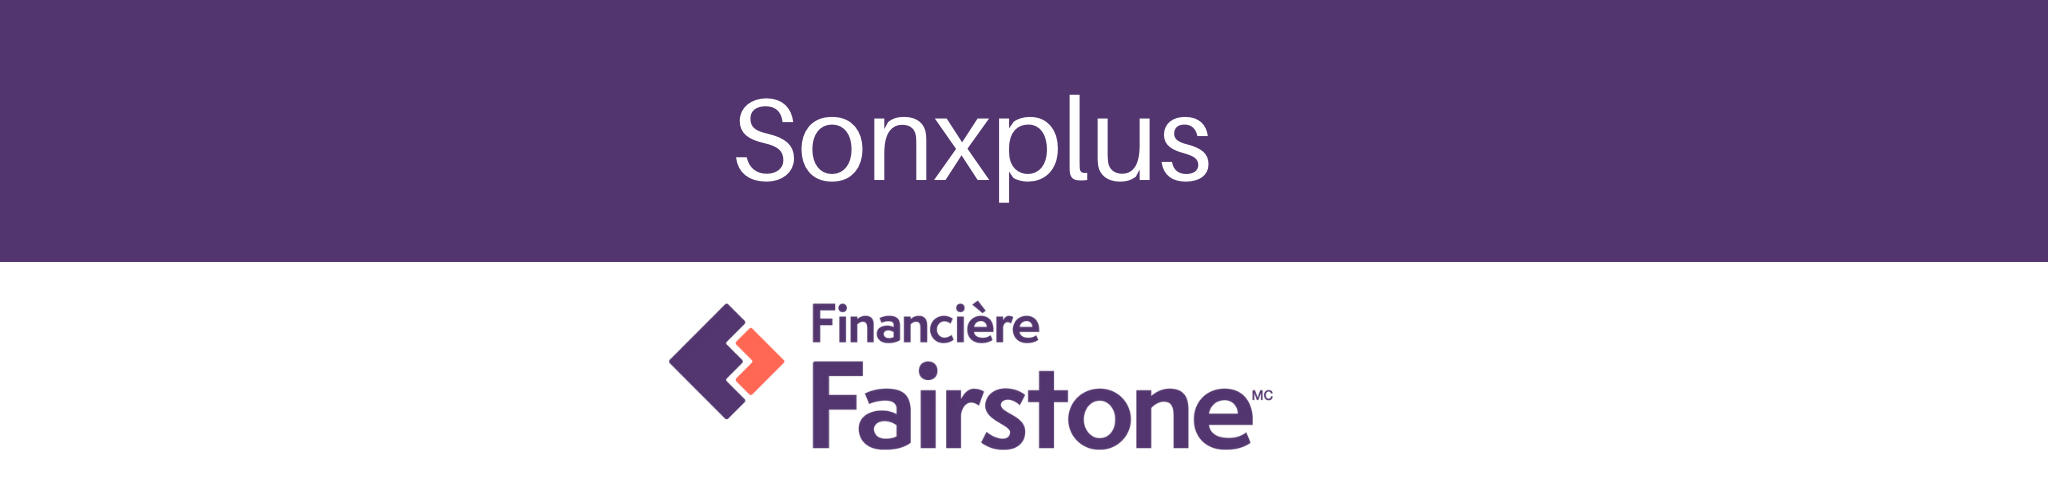 Financement Financière Fairstone et Sonxplus | Sonxplus